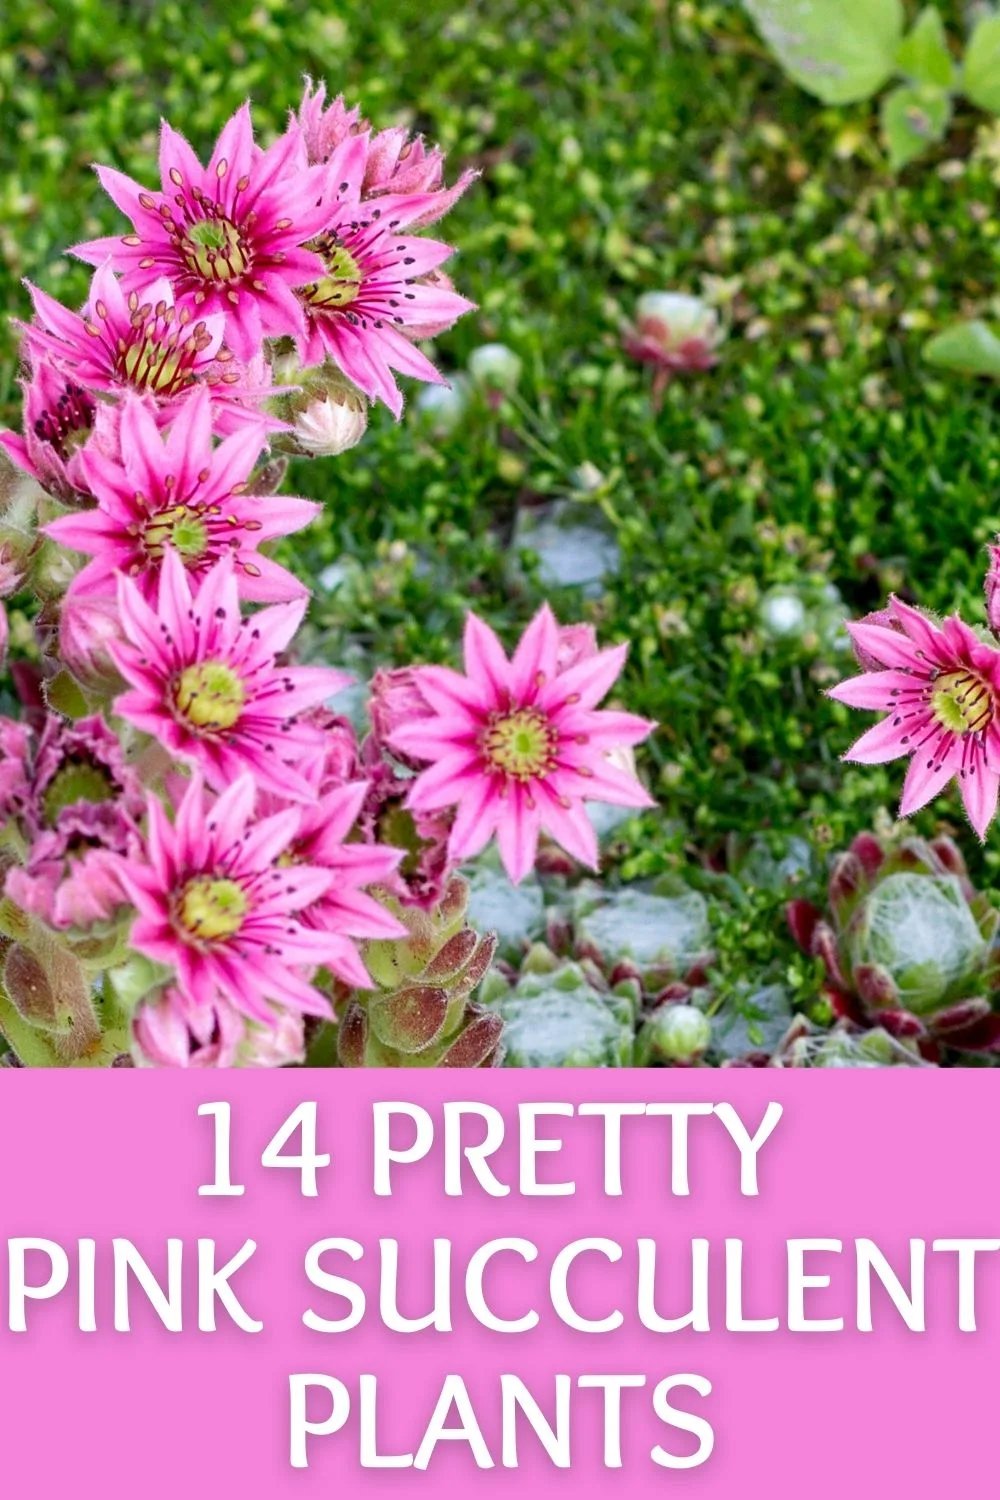 14 pink succulent plants